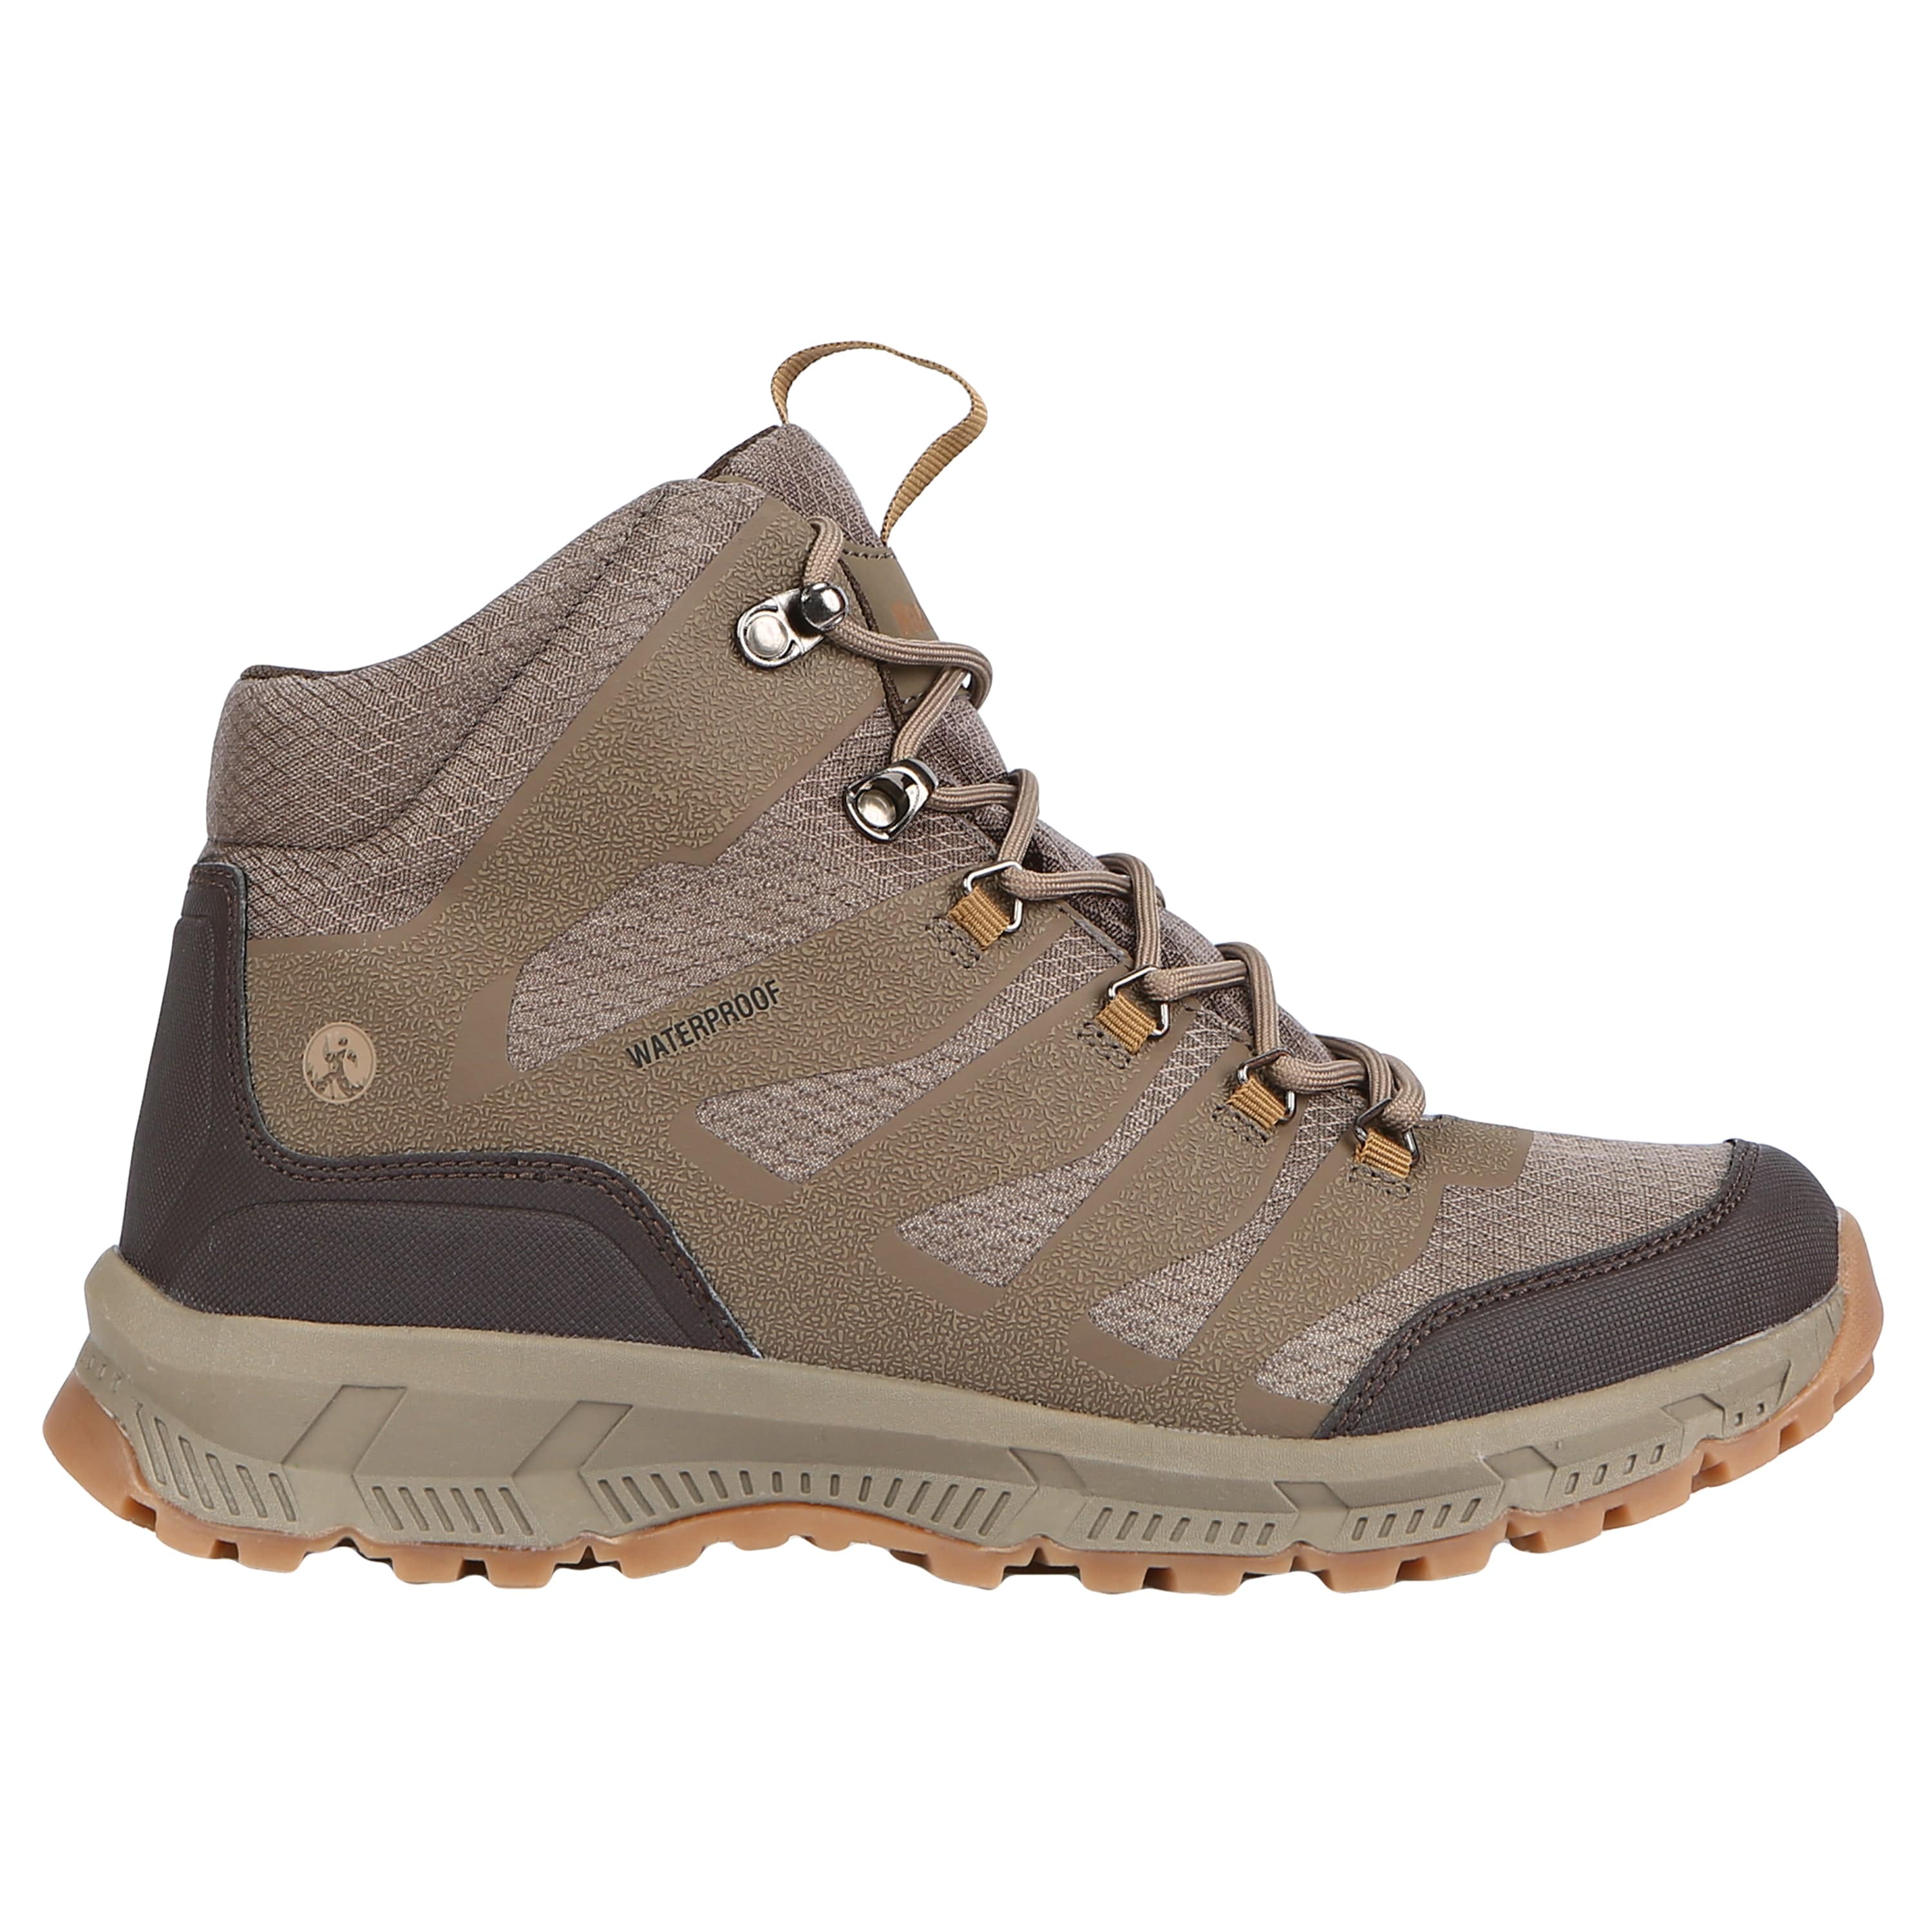 men's waterproof hiking boots